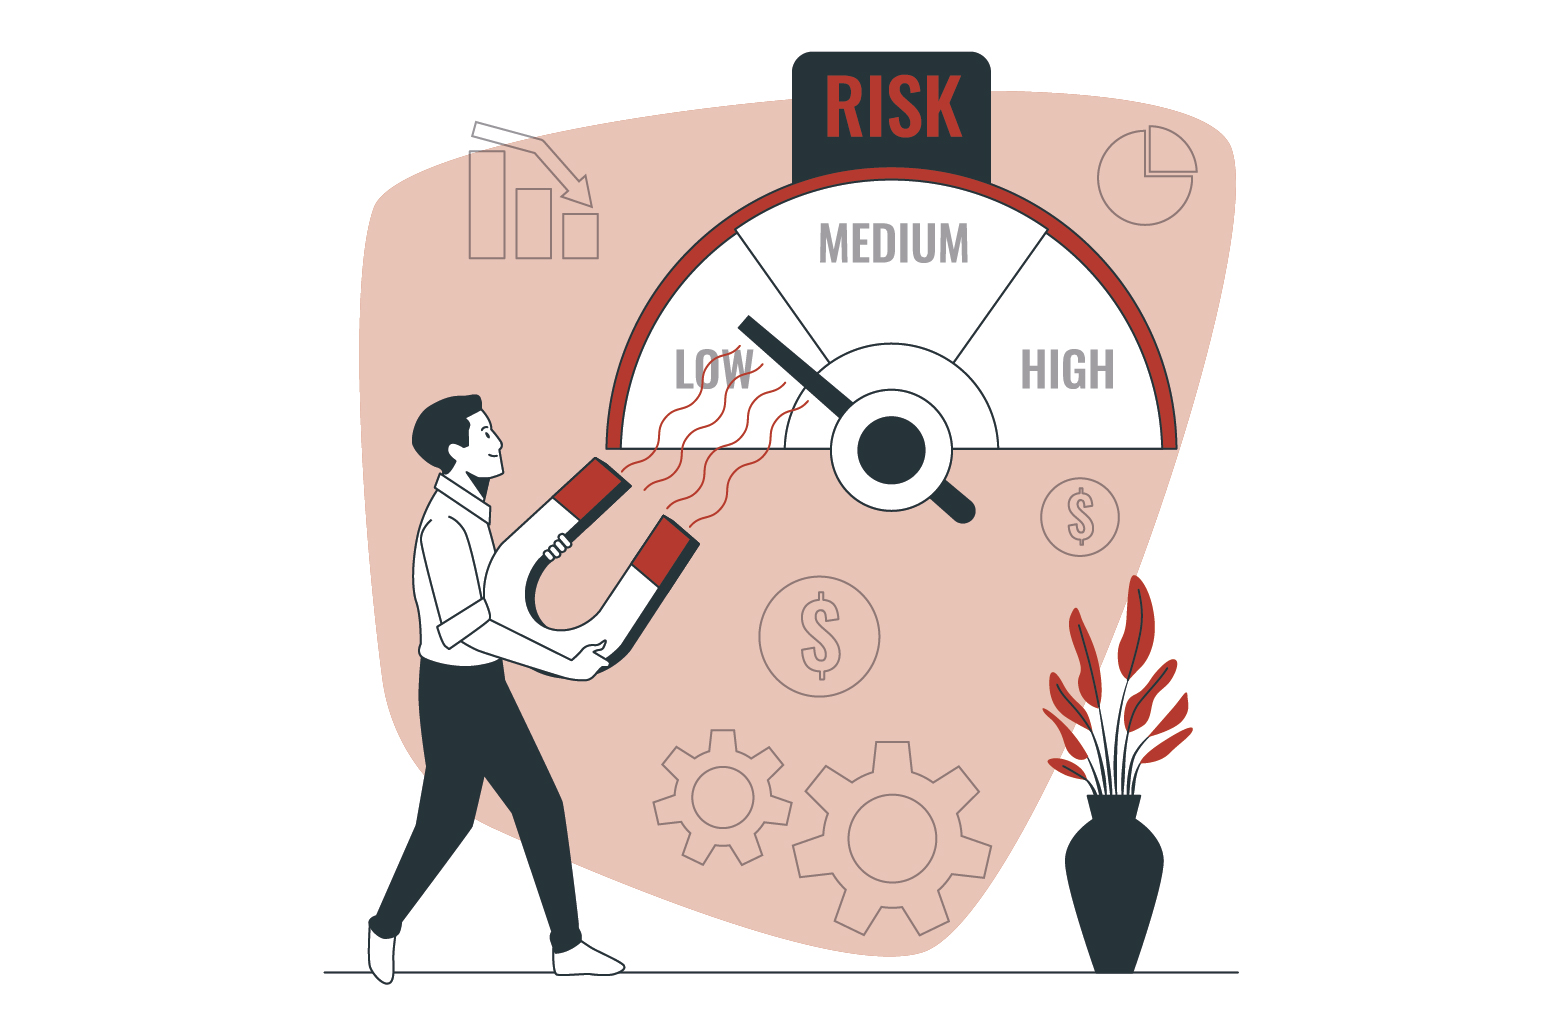 Improved Risk Management